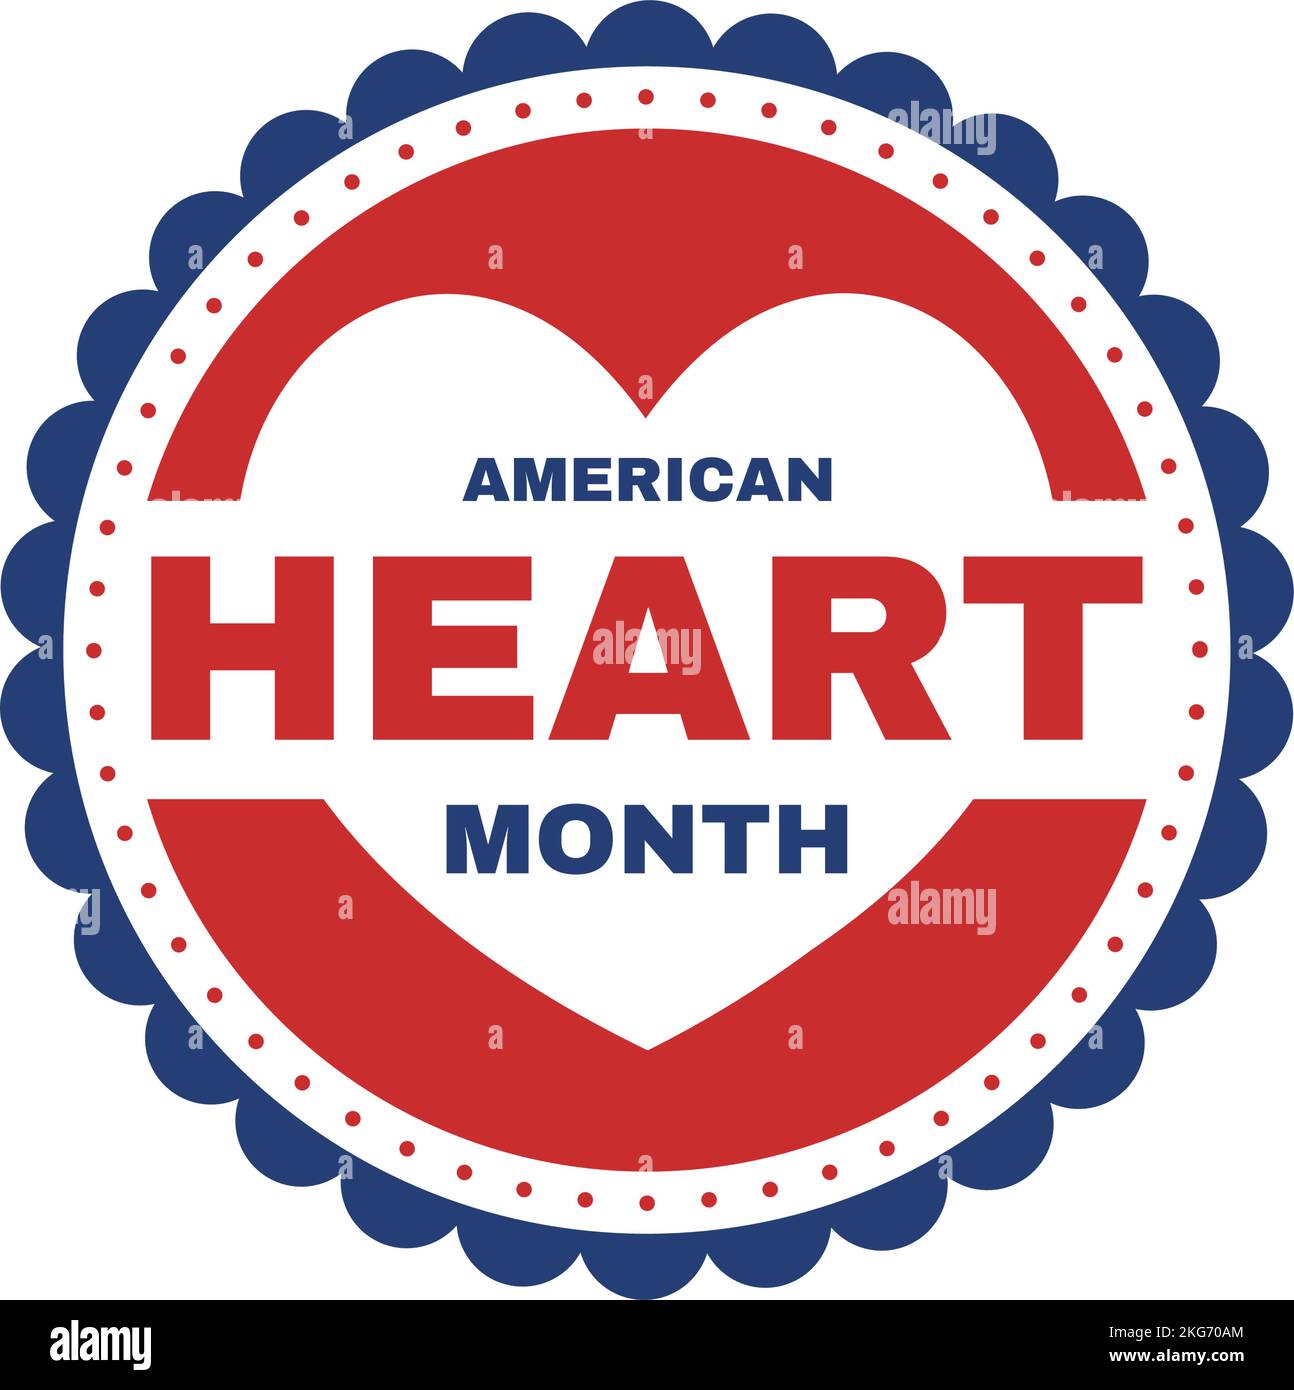 Februar ist der amerikanische Herzmonat mit einem Impuls für Gesundheit und Überwindung von Herz-Kreislauf-Erkrankungen in flacher, handgezeichneter Vorlagenillustration Stock Vektor